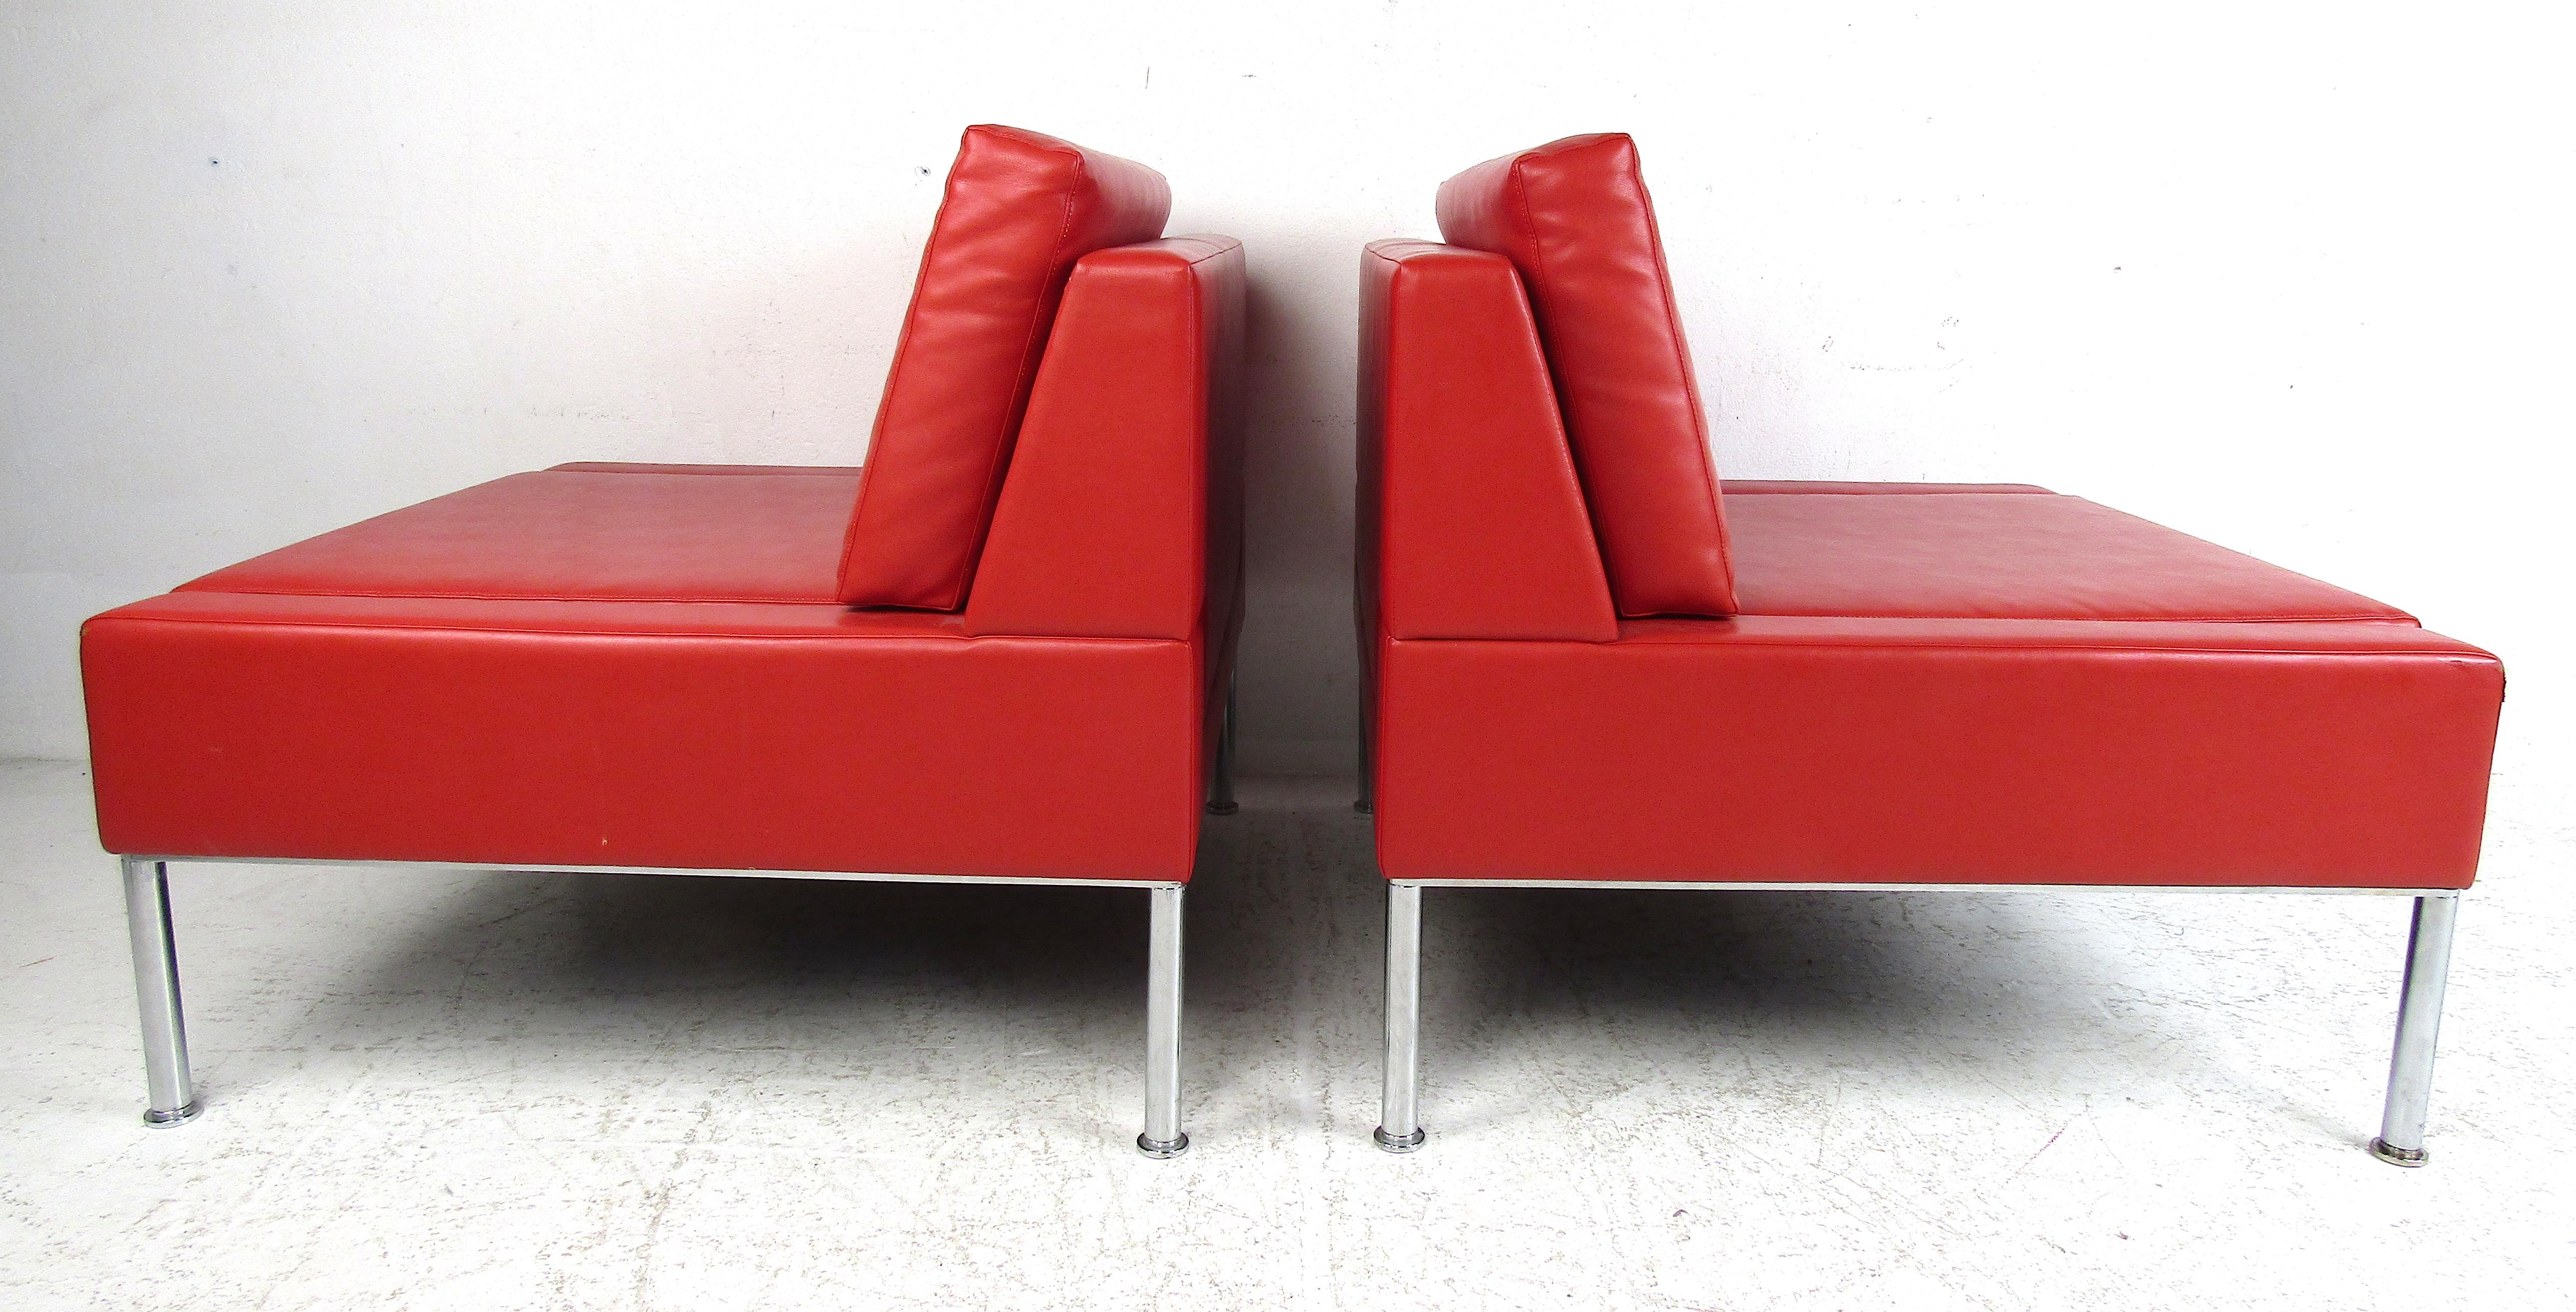 Elegantes Paar moderner Loungesessel mit einem aktualisierten Design des klassischen Pantoffelstuhls, der erstmals in der viktorianischen Zeit eingeführt wurde. Mit seiner minimalistischen Eleganz und seinen klaren Linien ist dieser vielseitige